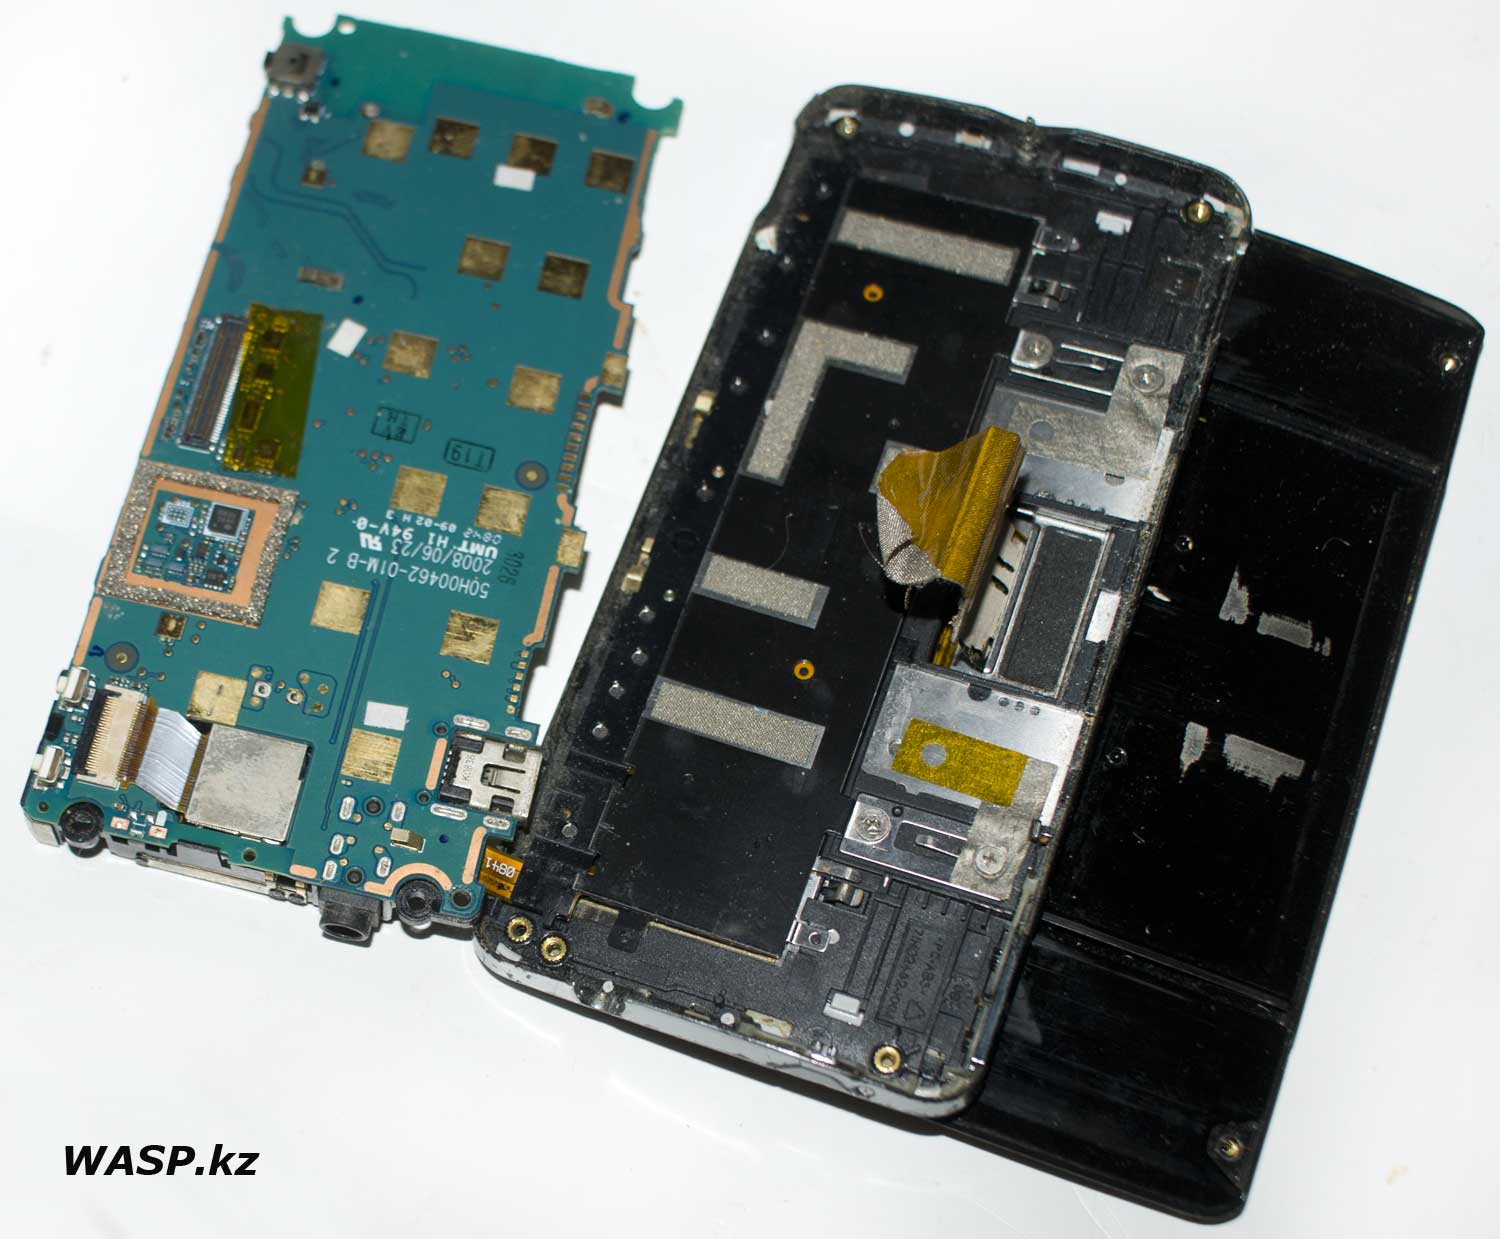 Руководство по разборке смартфона Sony Ericsson Xperia X1 все шаги